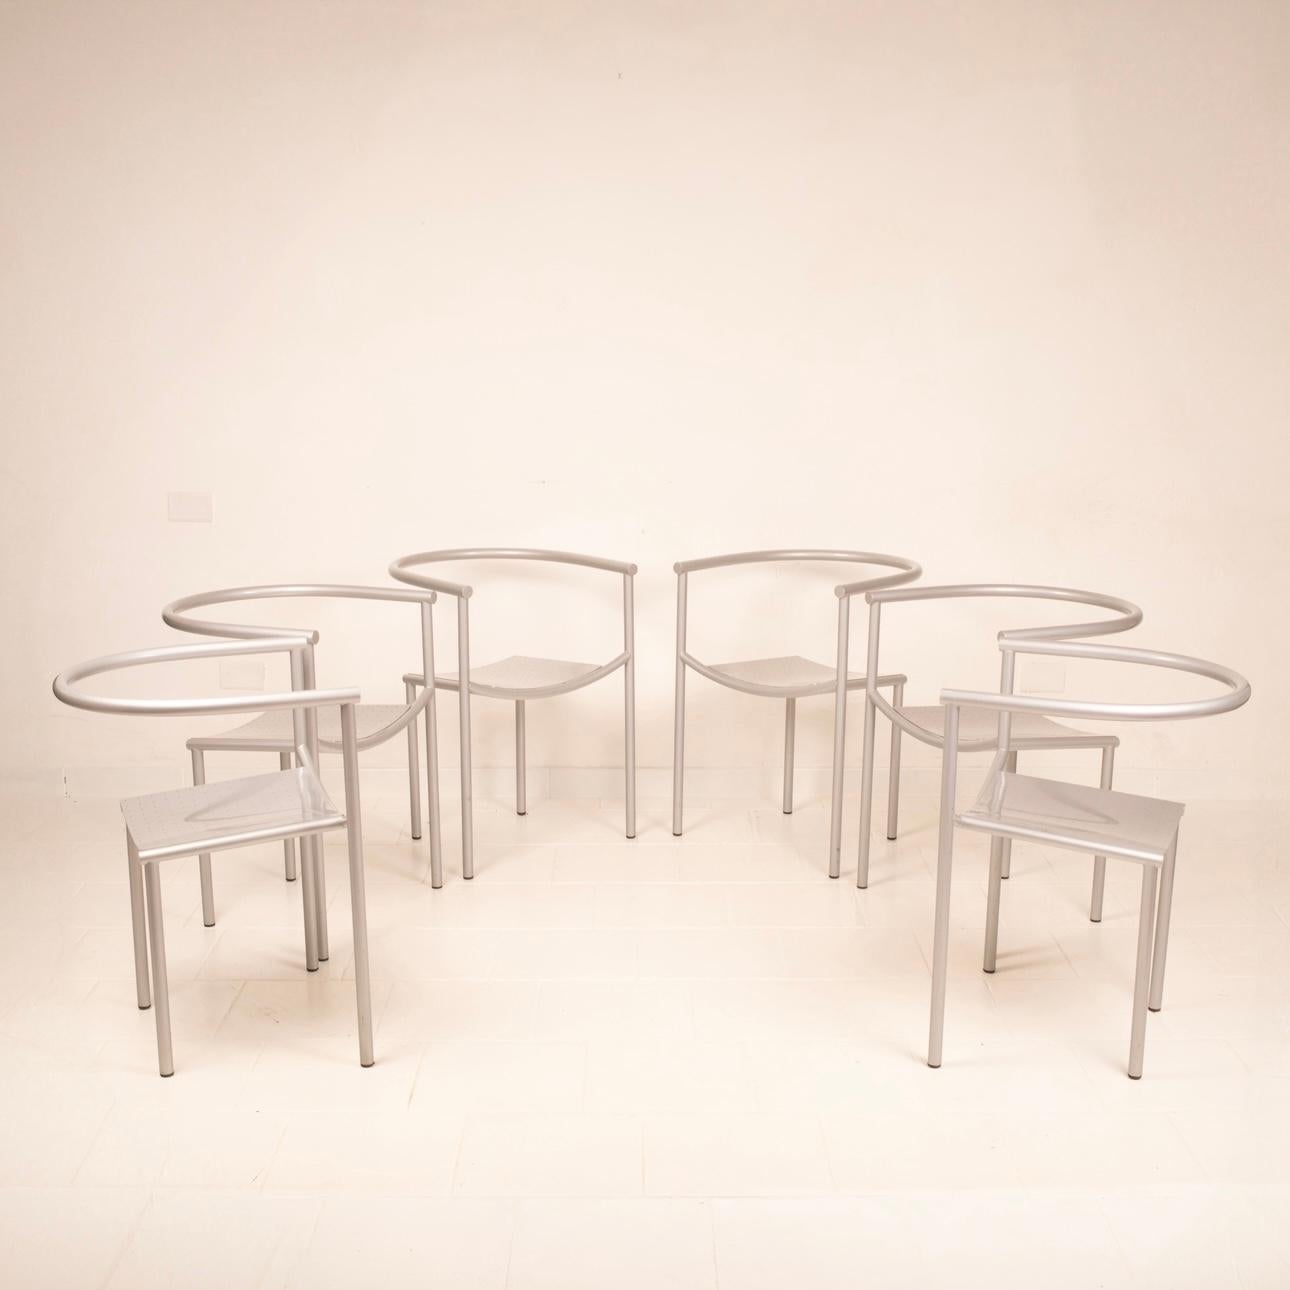 Atemberaubendes Set von 6 postmodernen Von Vogelsang-Stühlen, entworfen von Philippe Starck im Jahr 1985 und hergestellt von Driade.
Sie bestehen aus grau lackiertem Stahlrohr und perforiertem Stahlblech. 
Diese minimalistisch gestalteten Stühle